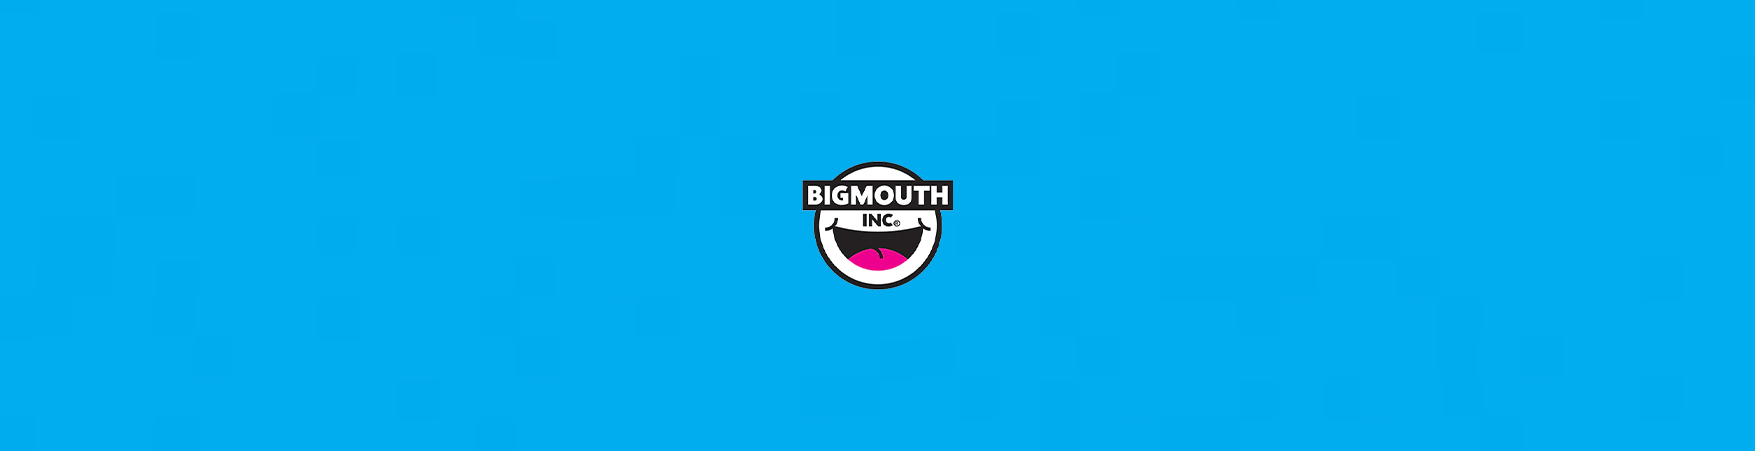 BigMouth Inc.